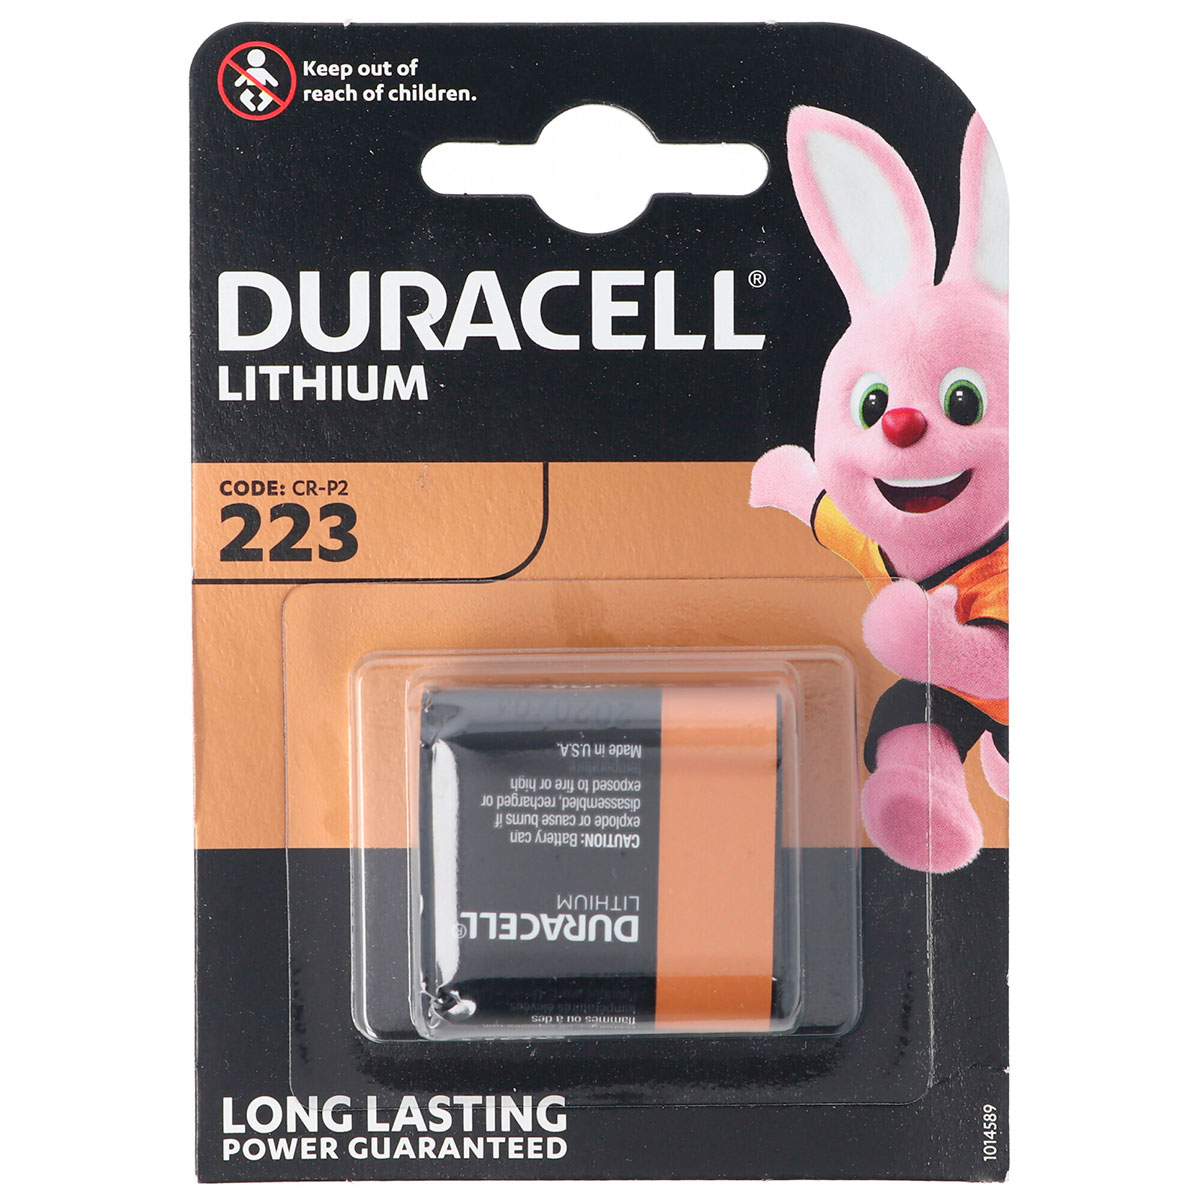 fængelsflugt lærred Orientalsk Duracell CR-P2 batteri 6V - Lithium (223) 1-Pack - Køb her